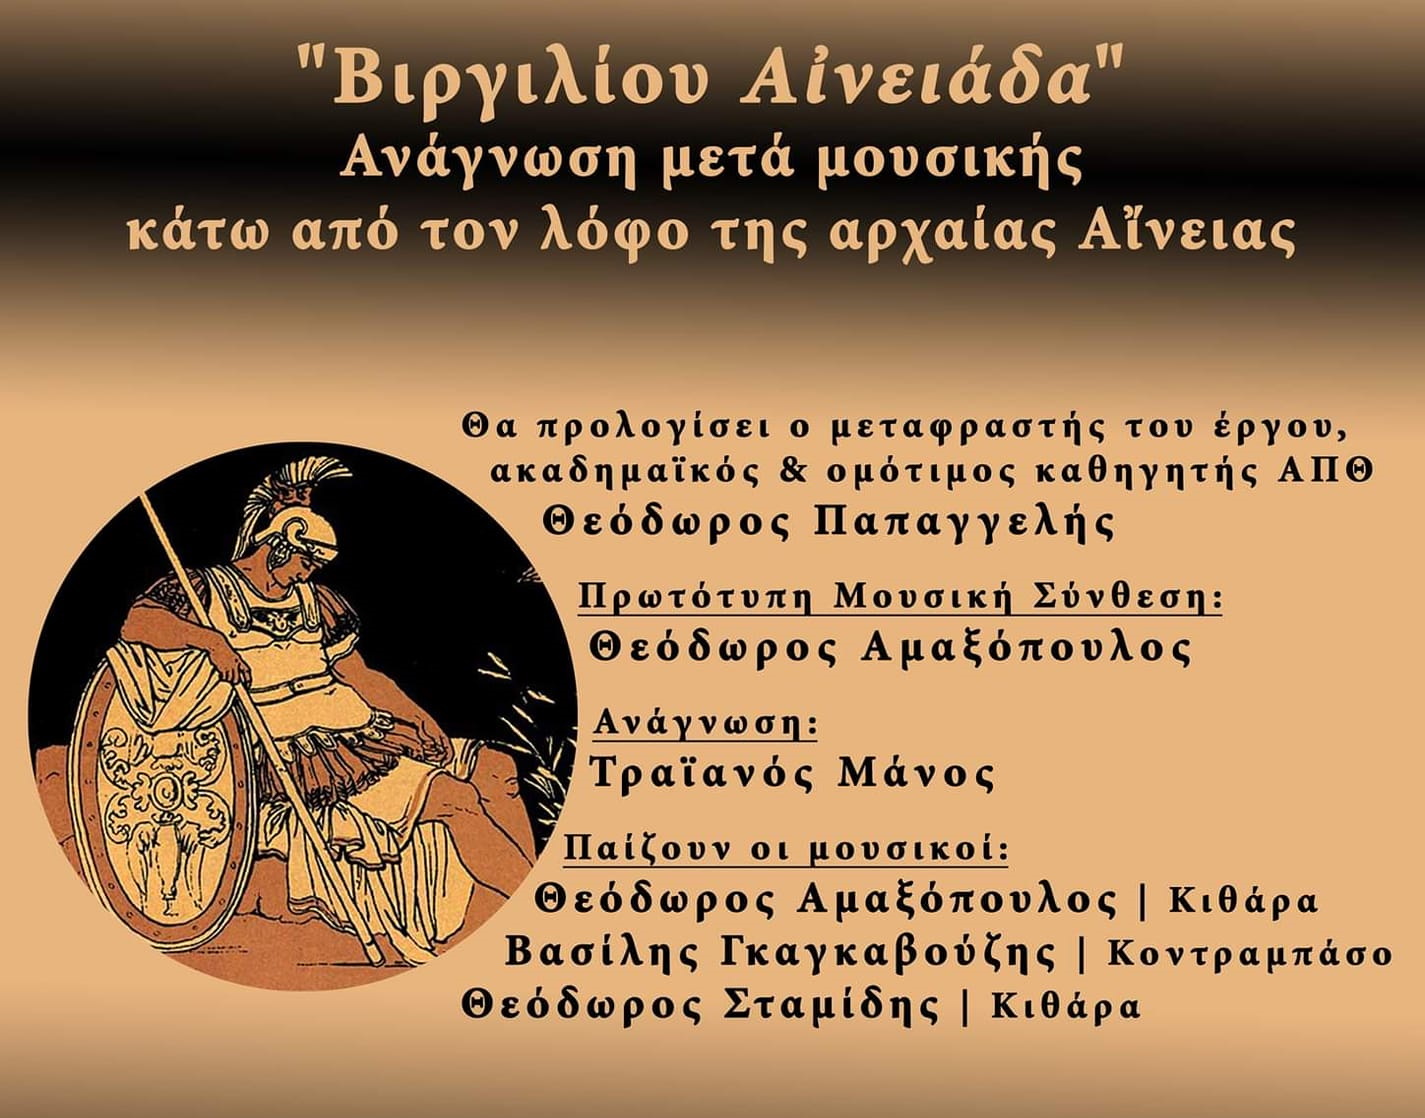 Θεσσαλονίκη: Ανάγνωση μετά μουσικής κάτω από τον λόφο της αρχαίας Αίνειας